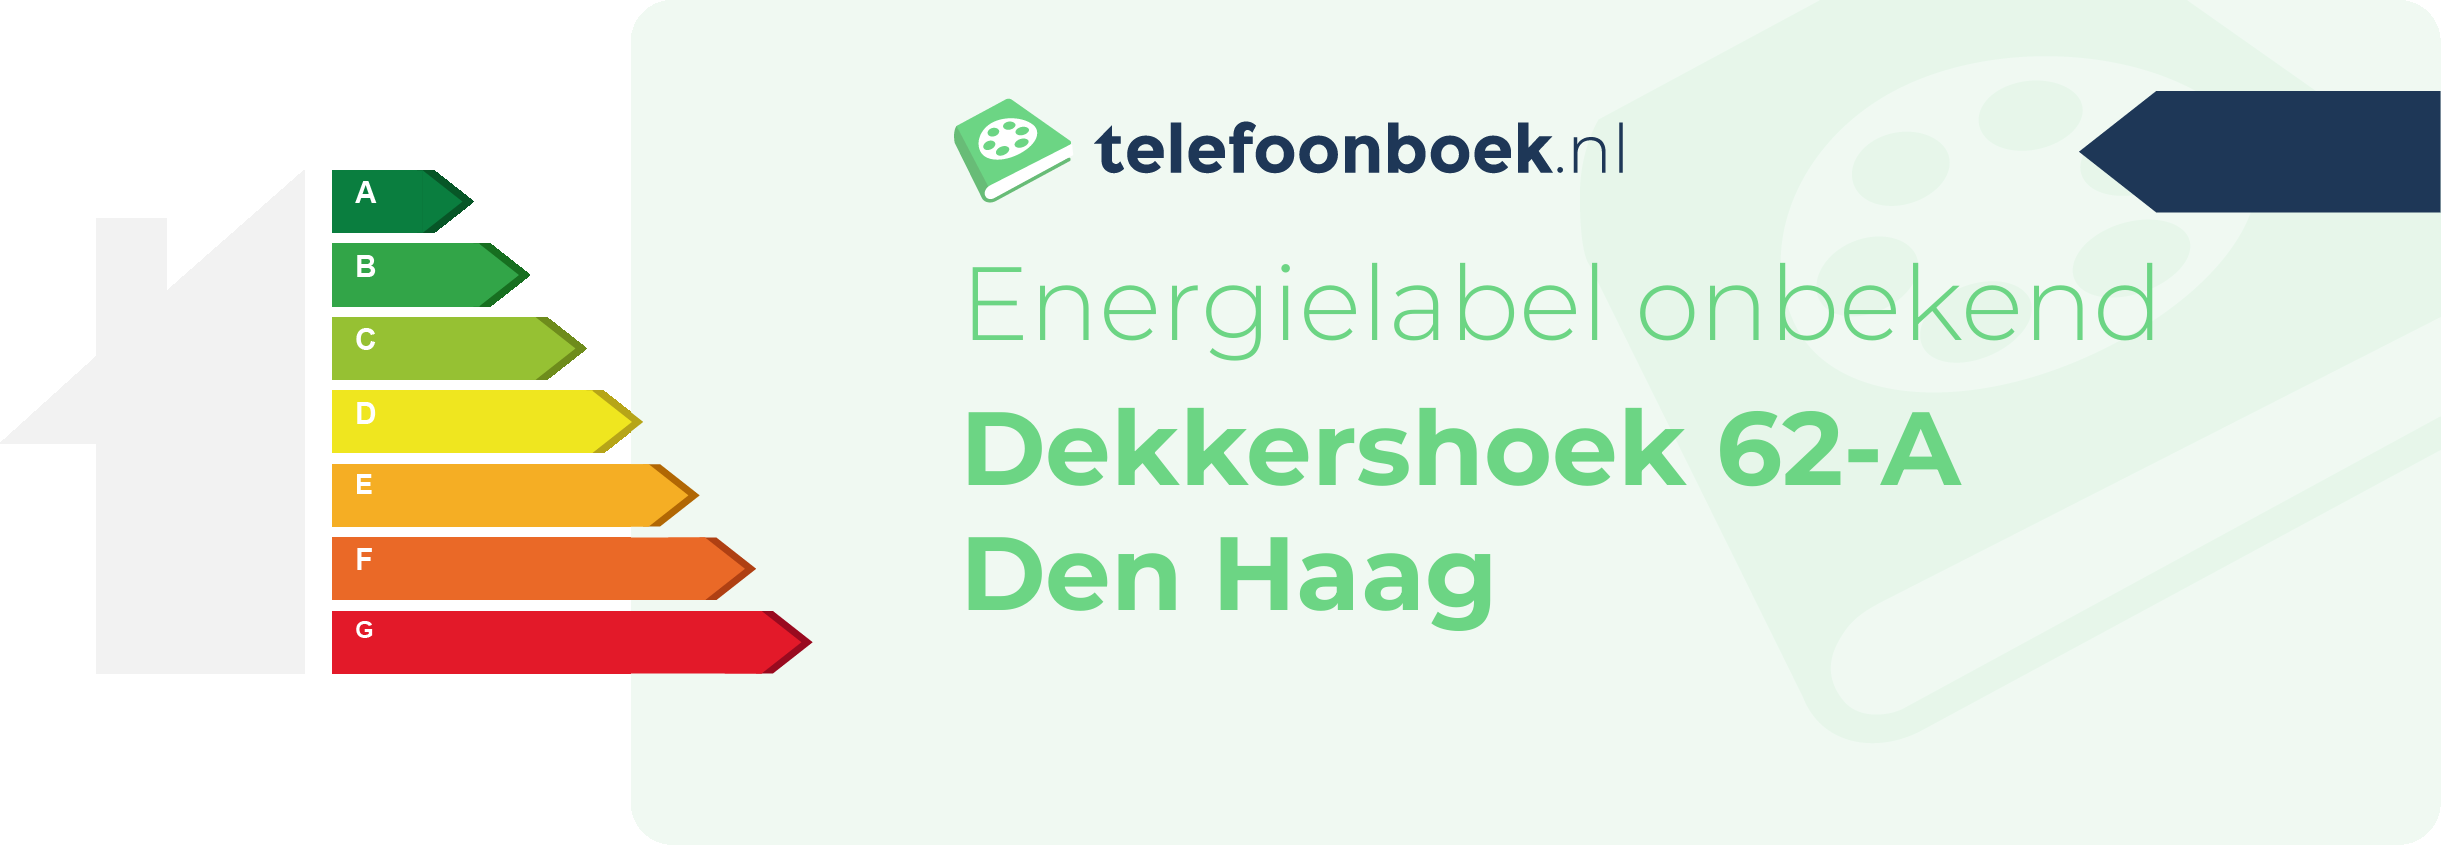 Energielabel Dekkershoek 62-A Den Haag